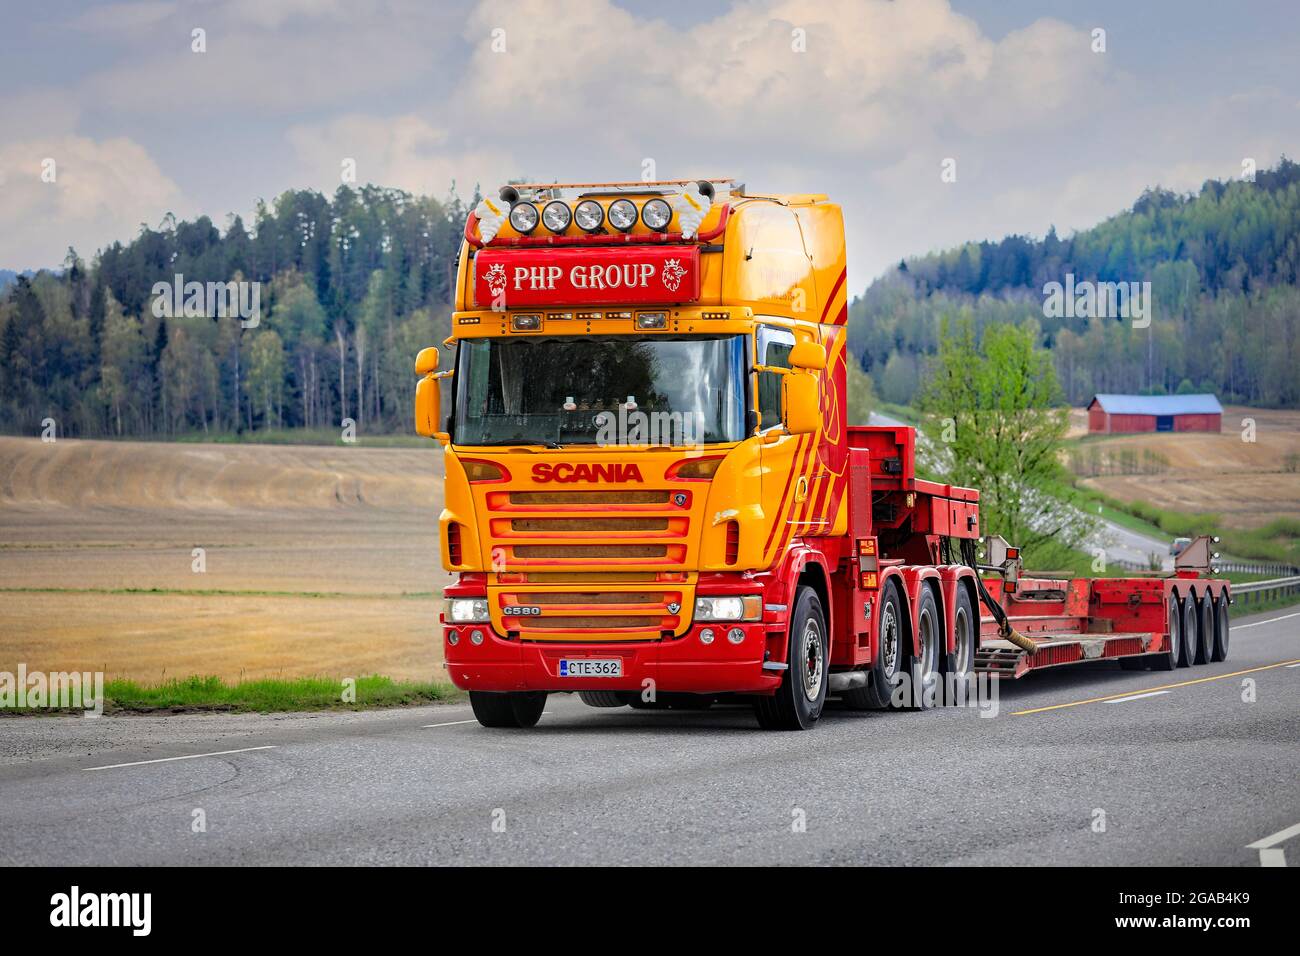 Kundenspezifischer Scania-LKW der PHP-Gruppe, der Schwanenhals-Anhänger zieht, kehrt von einer Lieferung schwerer Maschinen zurück. Highway 52. Salo, Finnland. 15.Mai 2021. Stockfoto